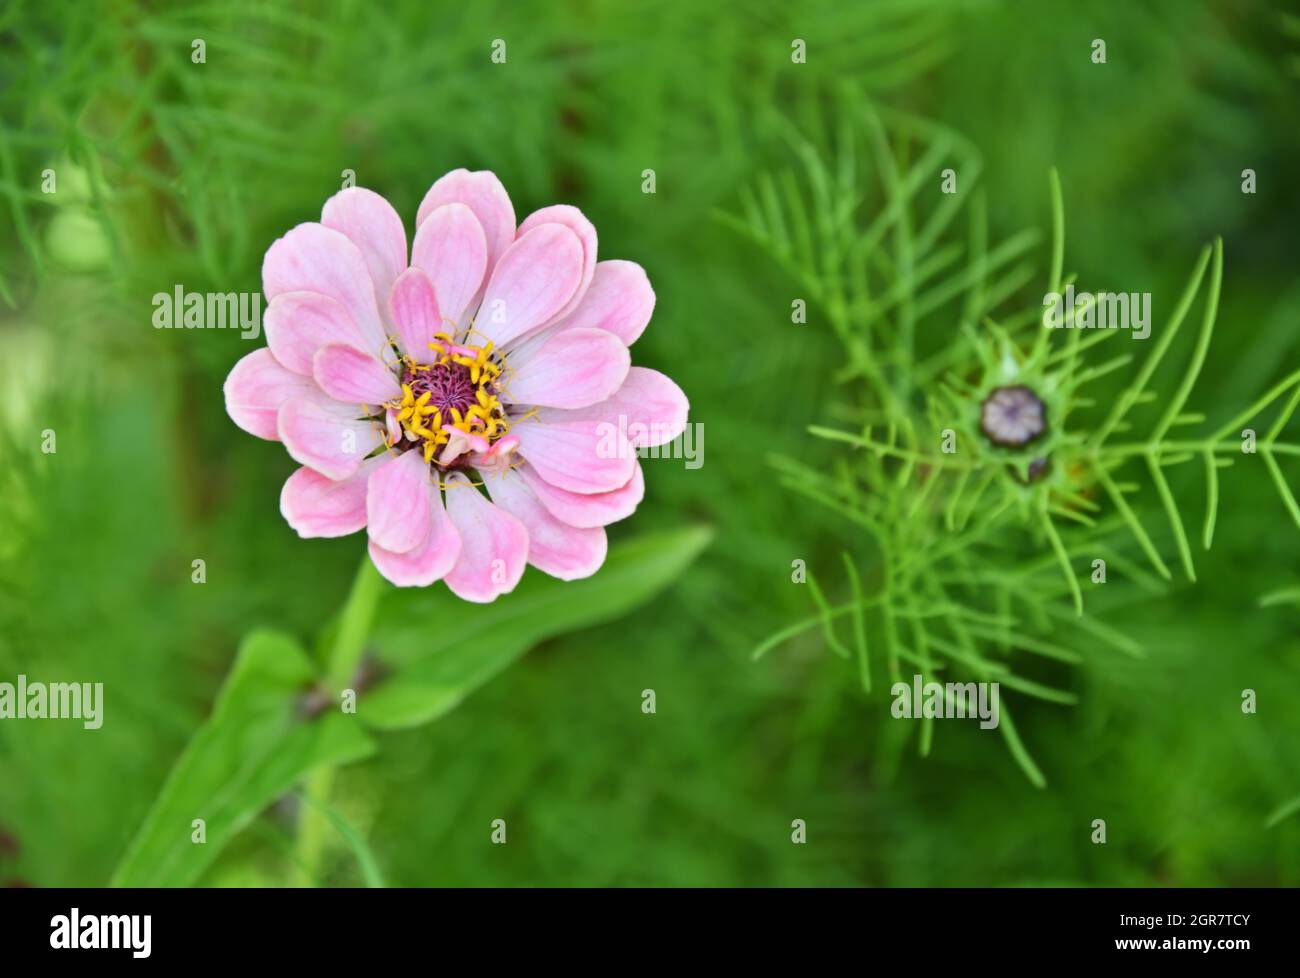 Una piccola pianta di zinnia rosa, in fiore, e una pianta di cosmo germogliante che cresce accanto alla zinnia su sfondo verde. Foto Stock